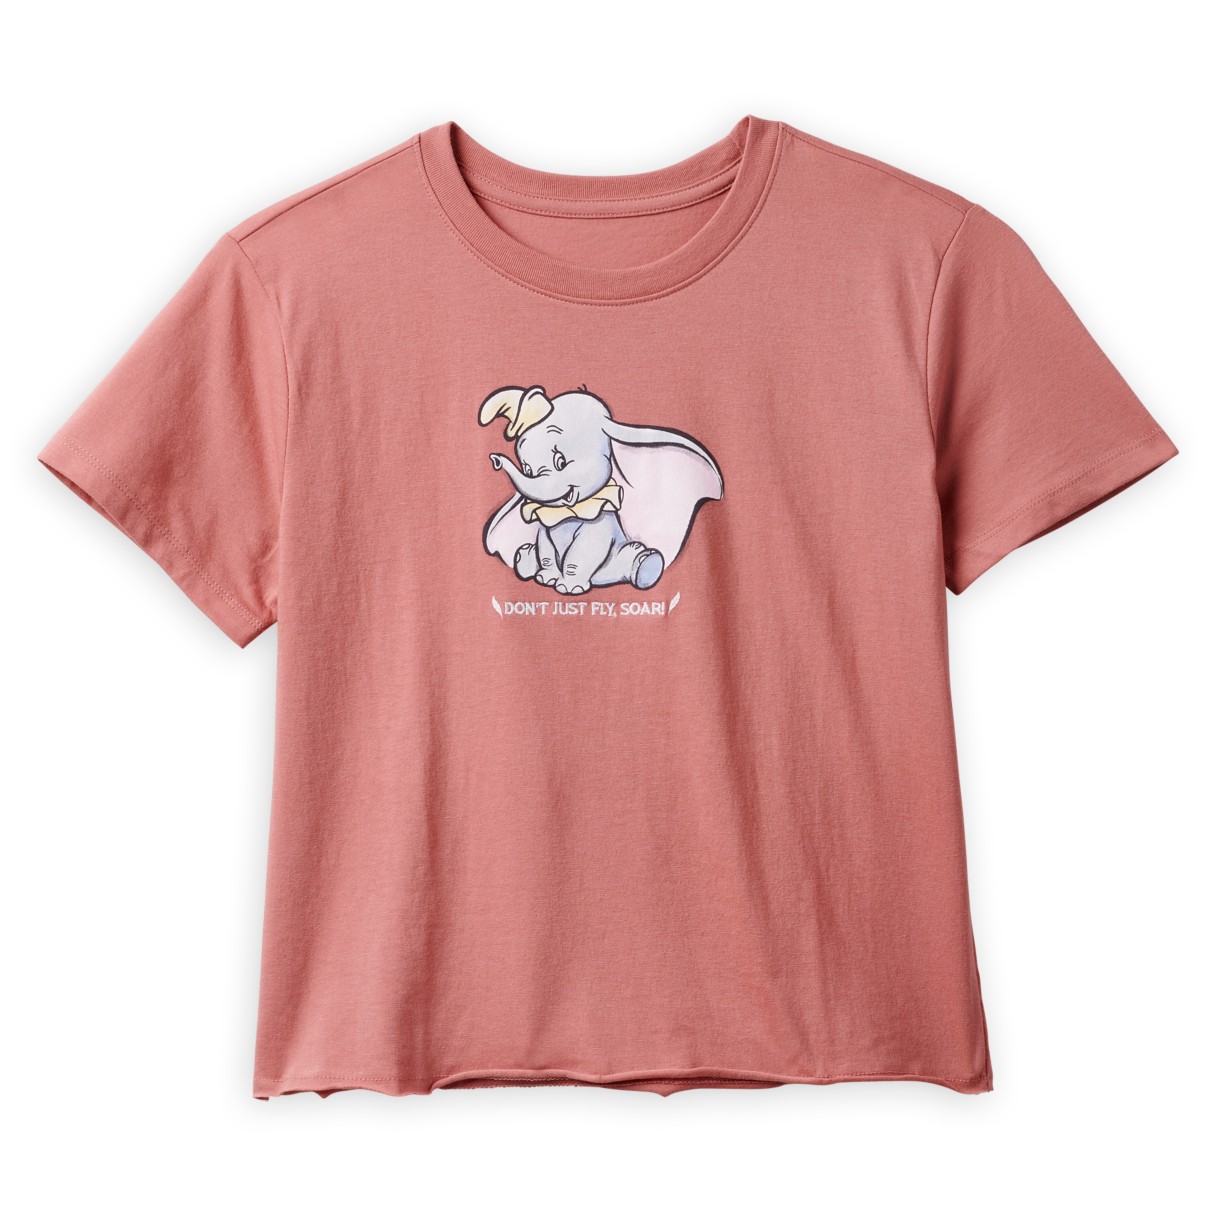 Dumbo Fashion T-Shirt for Women